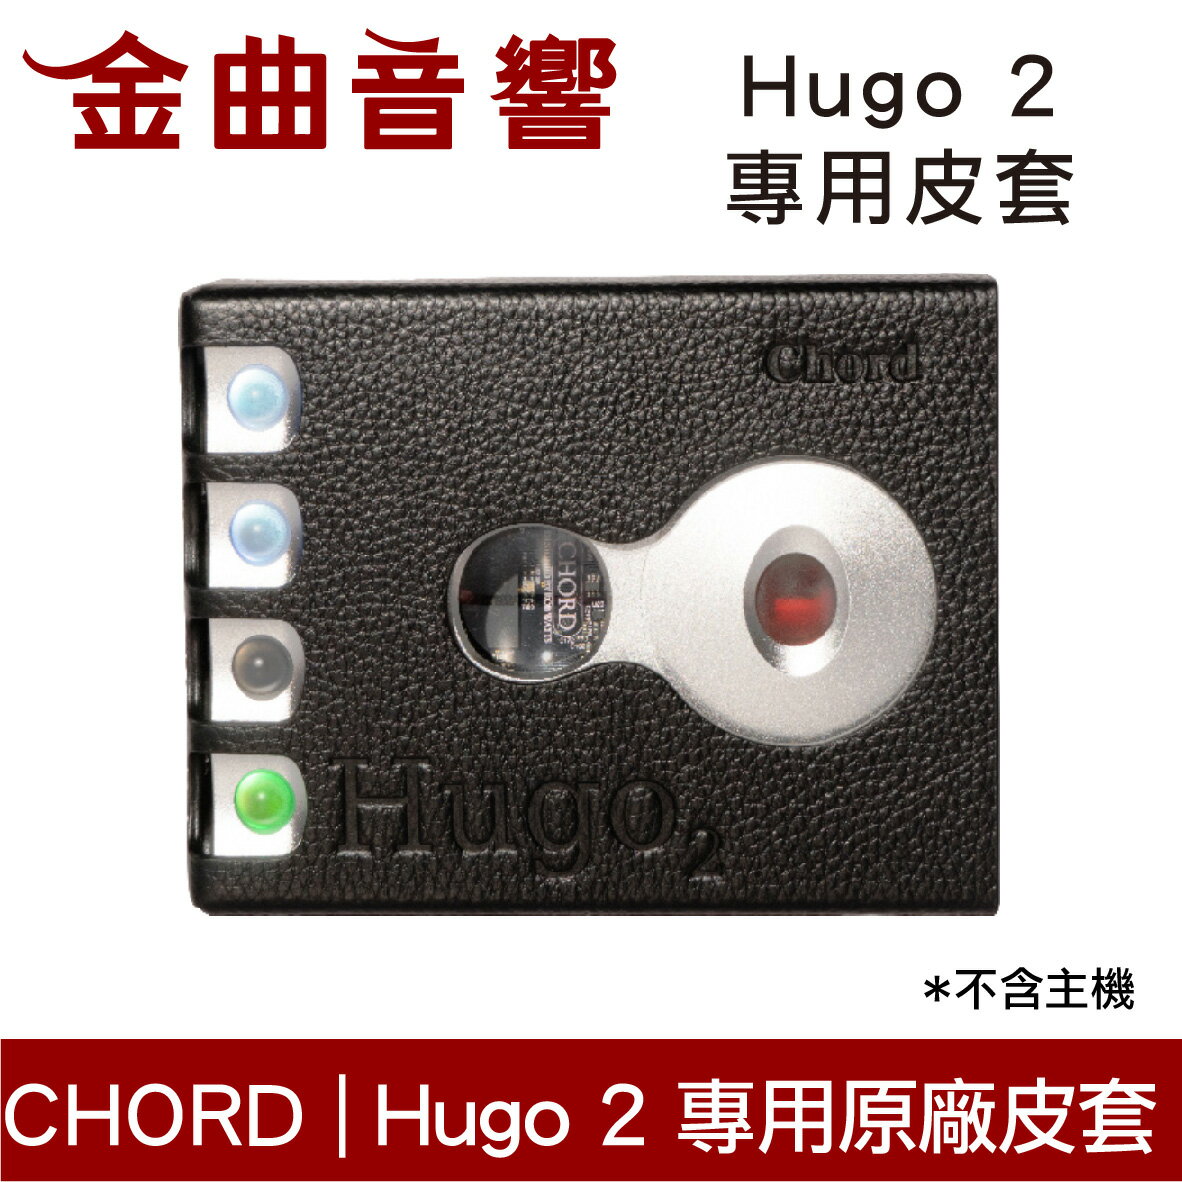 Chord Hugo 2 原廠 專用保護皮套 高級 超薄 保護套 | 金曲音響